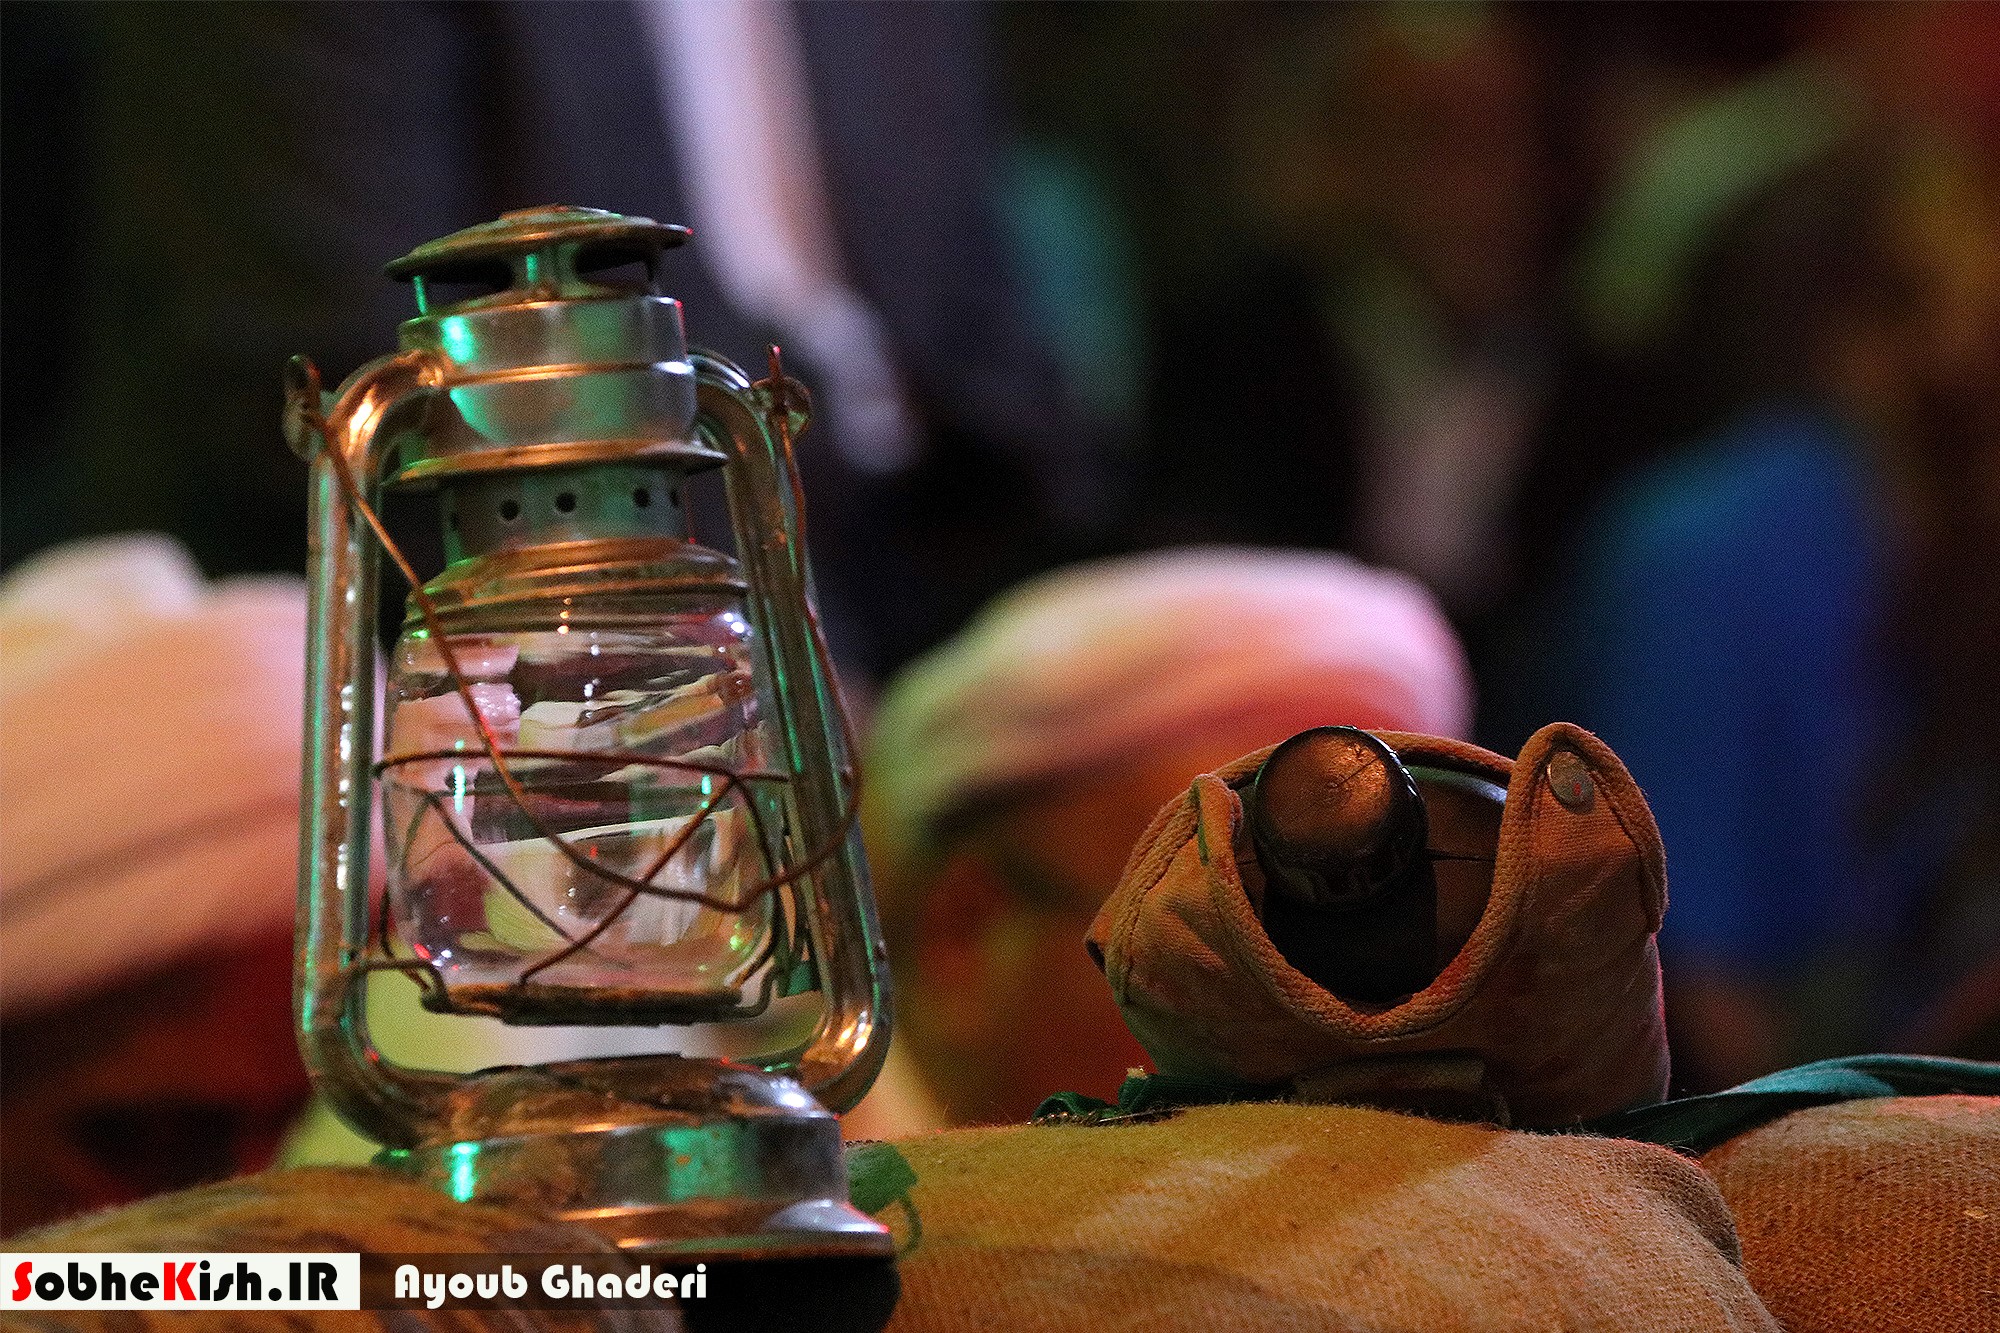 برگزاری شانزدهمین سالگرد تدفین شهدای گمنام در مسجد امام حسن (ع) _ کیش